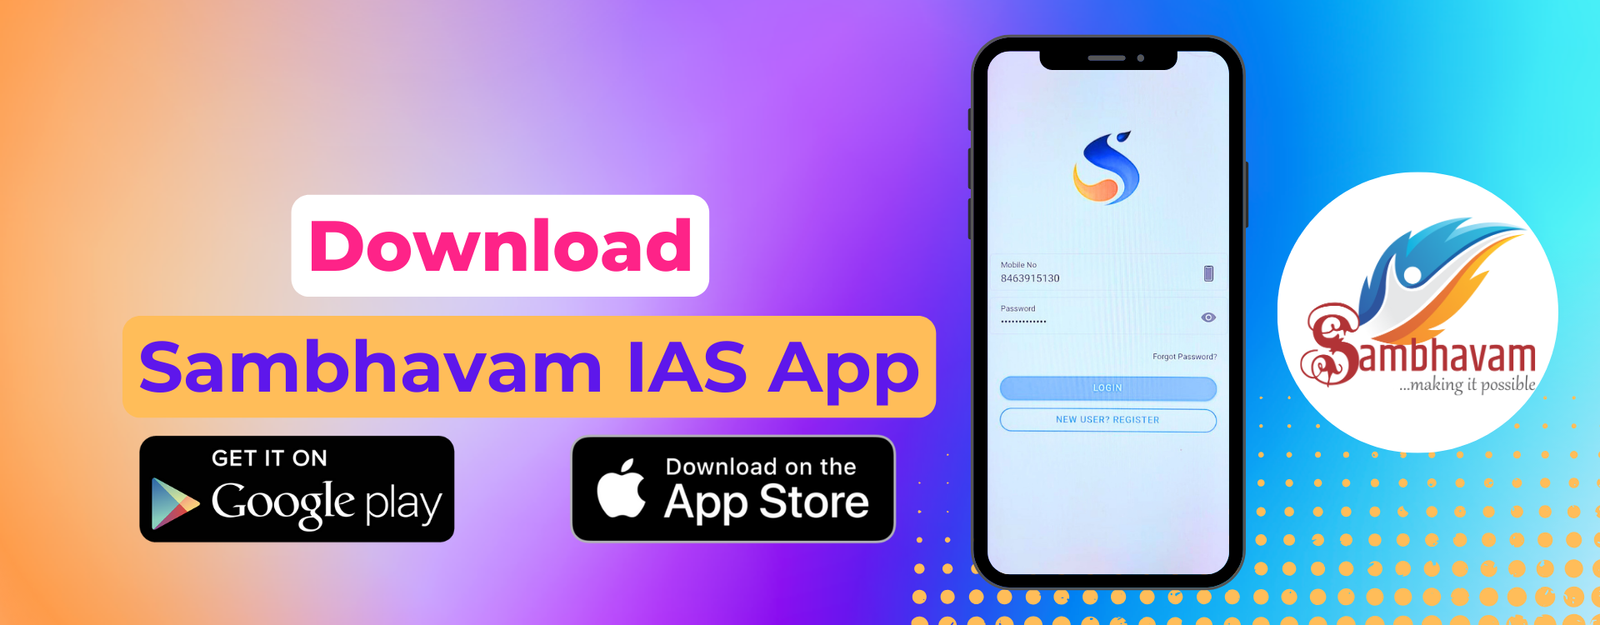 Sambhavam IAS App